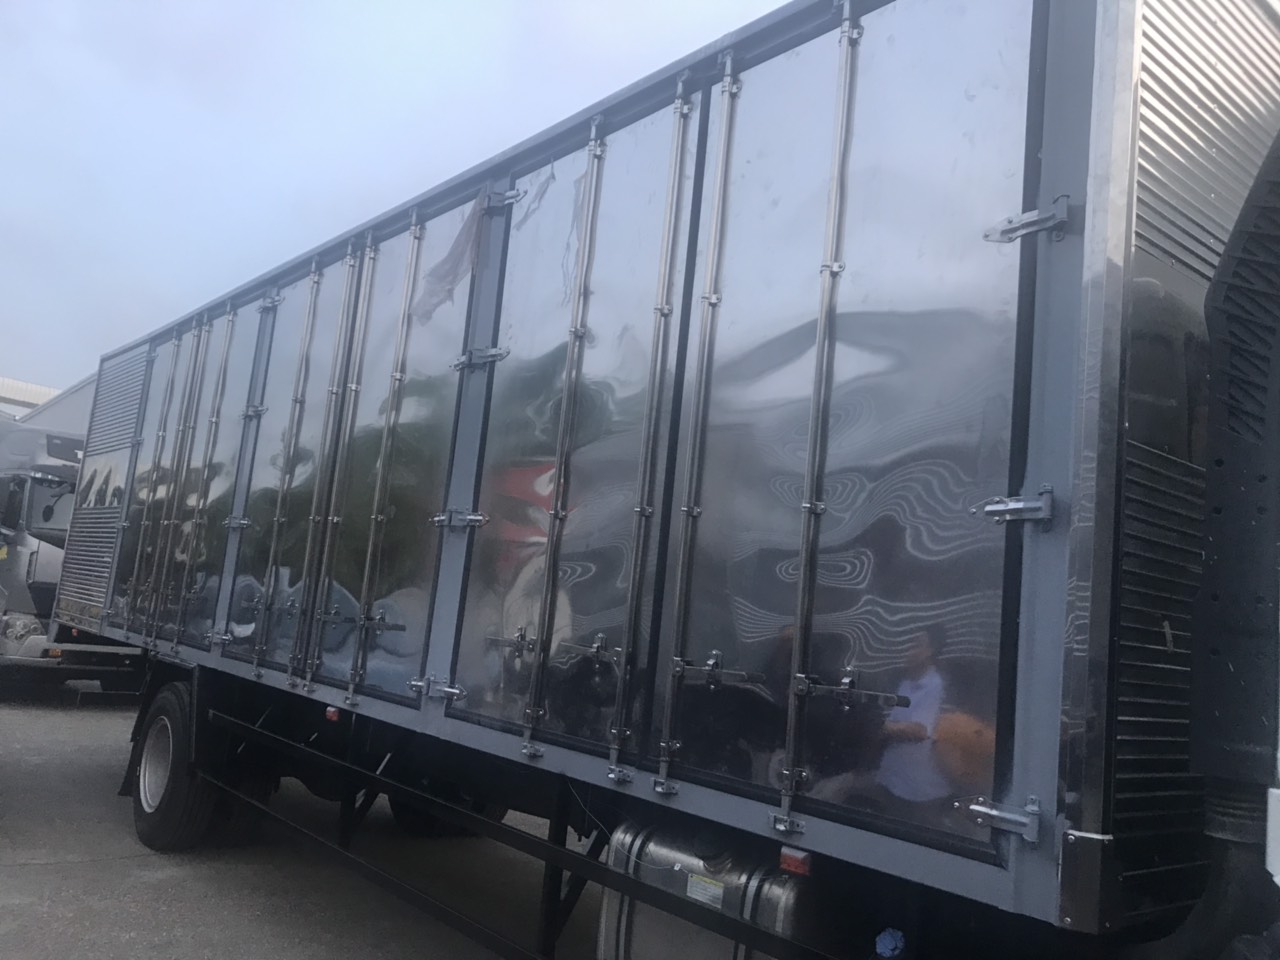 Xe tải 5 tấn - dưới 10 tấn 2018 - Xe tải thùng dài chở pallet - xe Faw thùng kín - xe Faw thùng dài - Mua xe thùng dài trả góp - Xe thùng dài nhập khẩu 